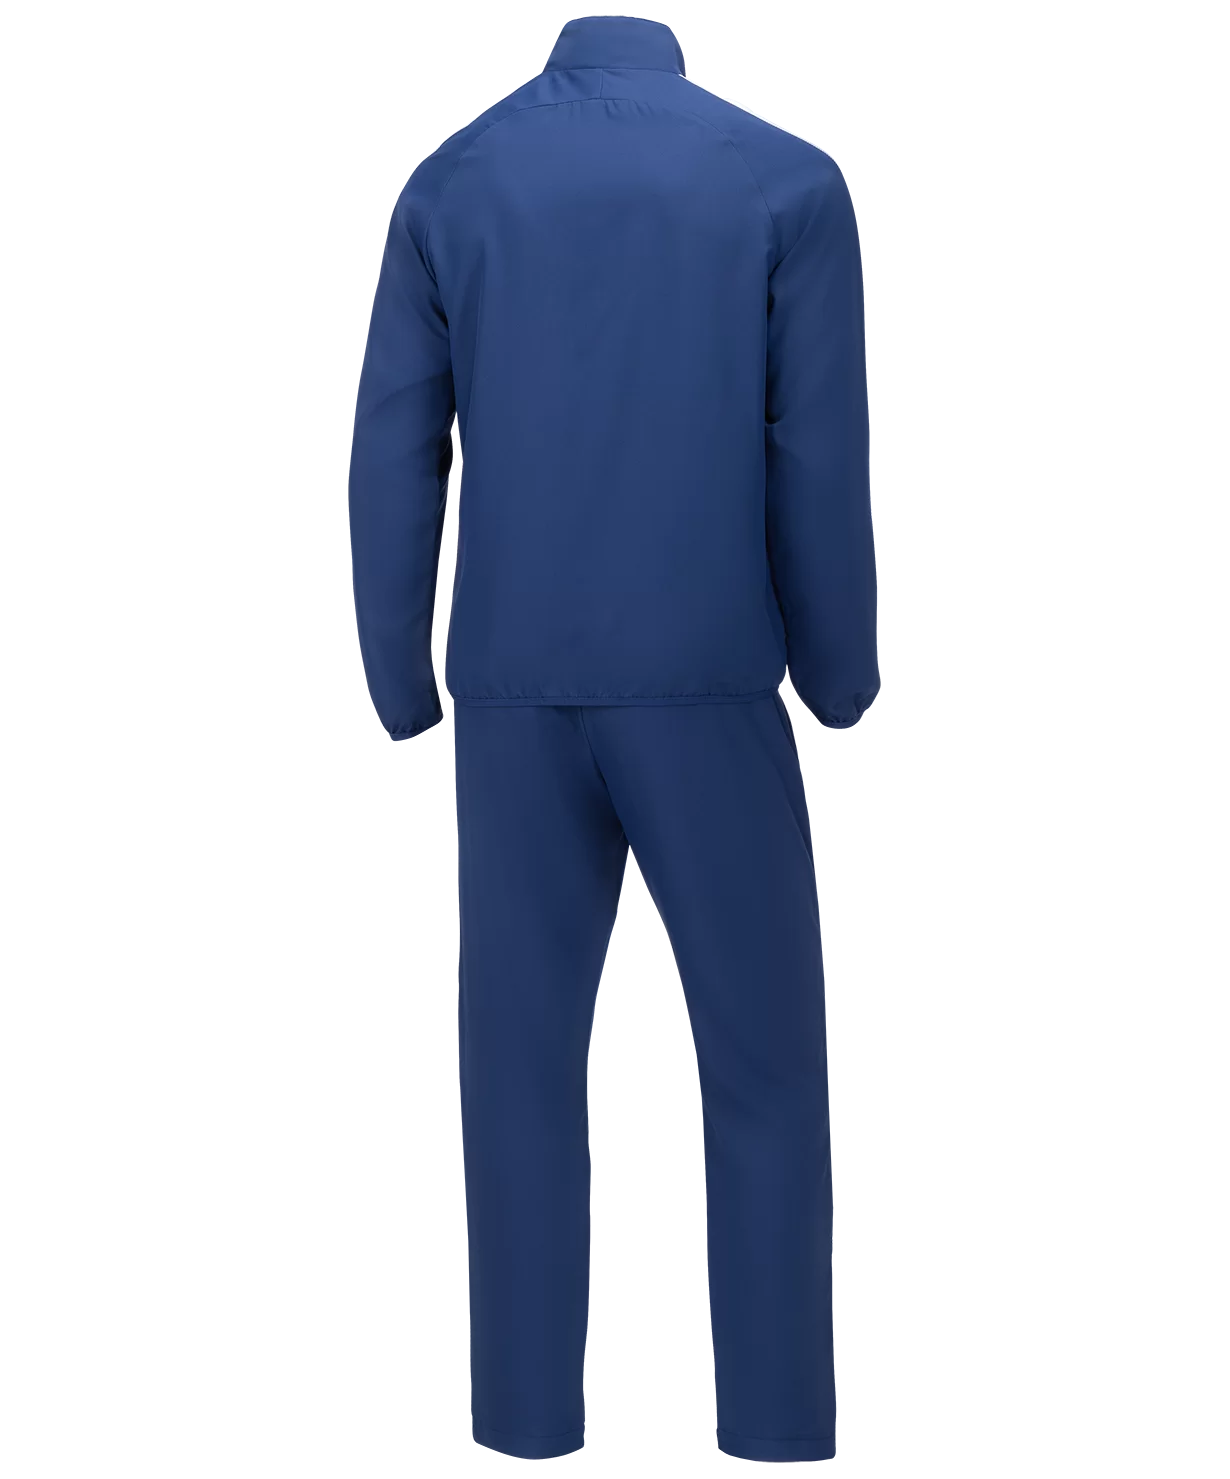 Реальное фото Костюм спортивный CAMP Lined Suit, темно-синий/темно-синий/белый, детский - XS - YL - YM - XS - XS - XS - YS от магазина СпортСЕ